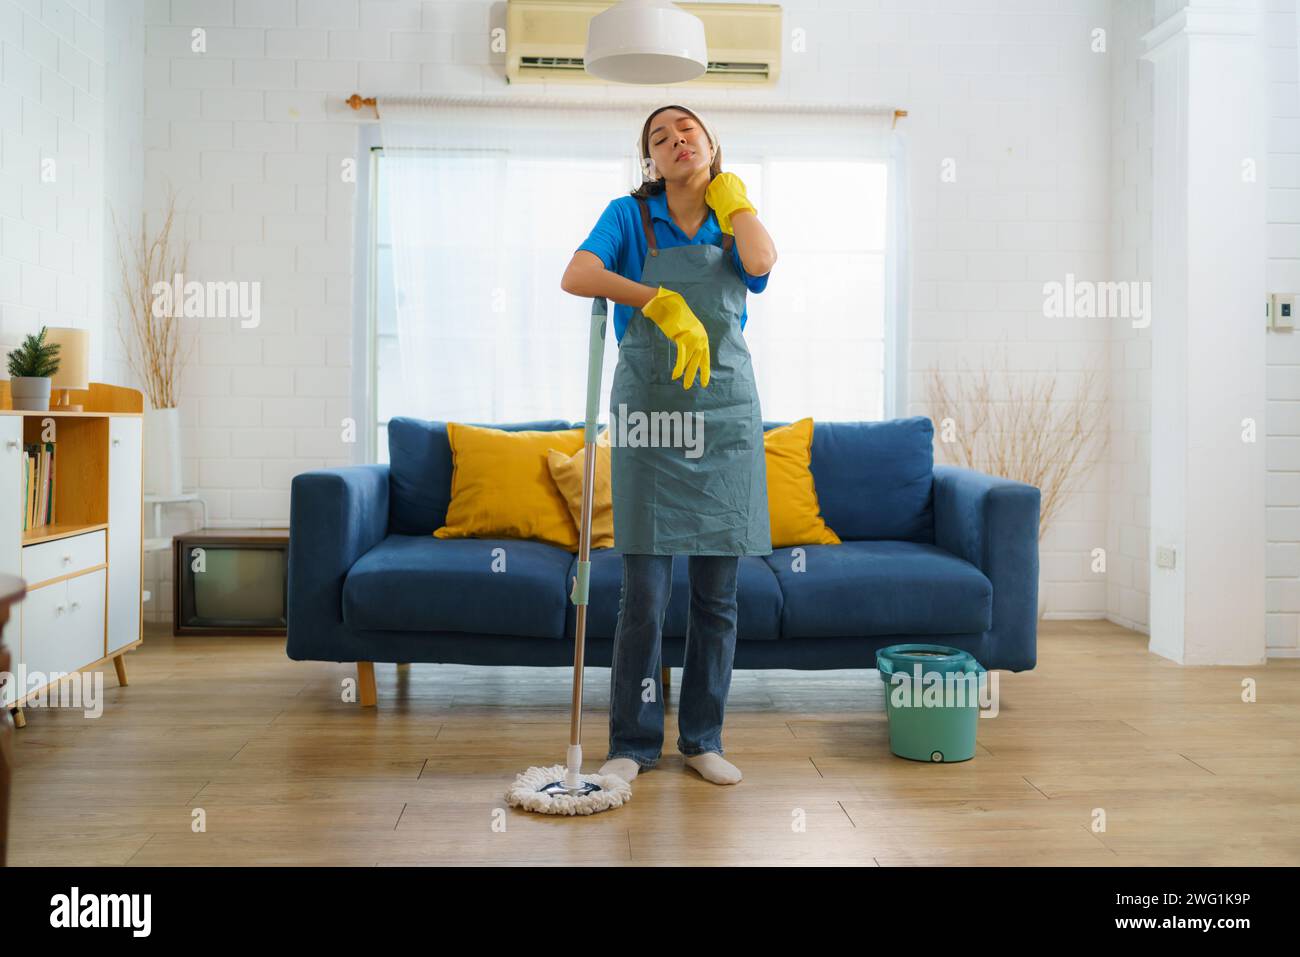 Femme de ménage comme elle nettoie lassablement le sol dans le salon reflète le travail acharné et le dévouement de l'équipe de nettoyage, mettant en évidence l'engagement à Banque D'Images